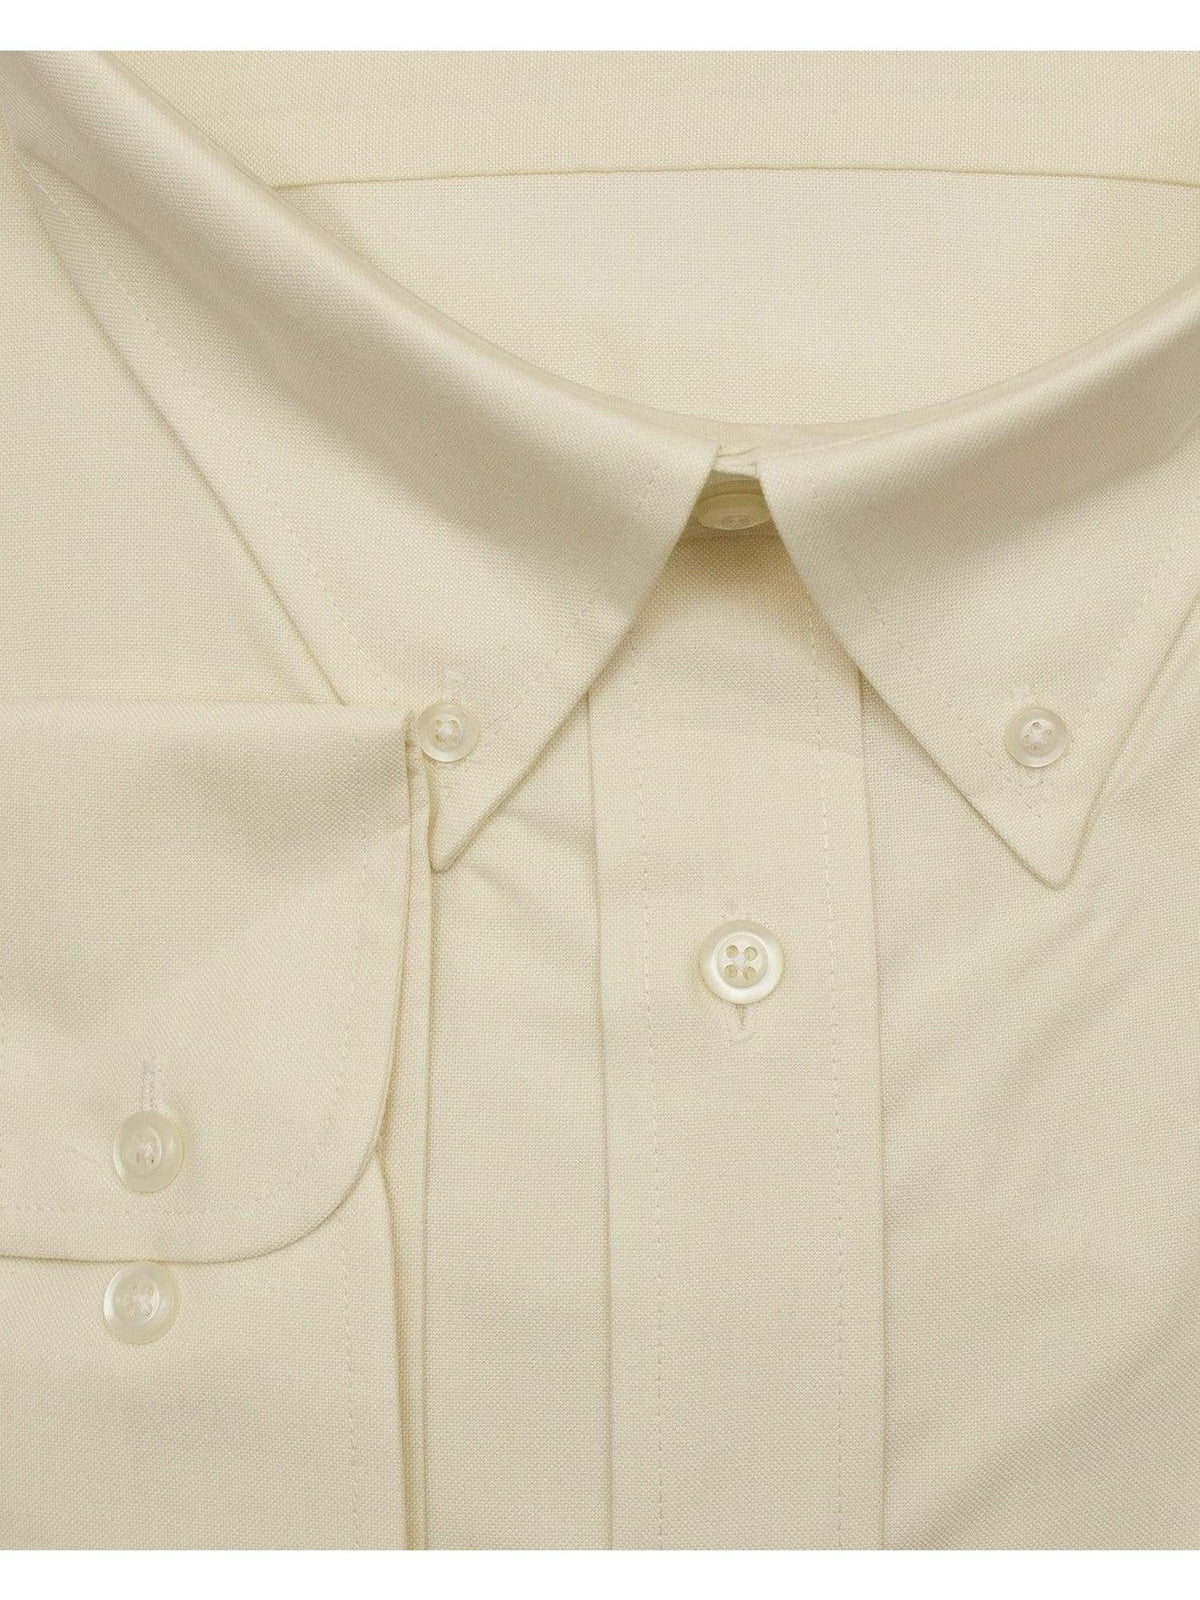 Brand J SHIRTS Mens Cotton Solid Ecru Regular Fit Button-Down Collar Oxford Dress Shirt